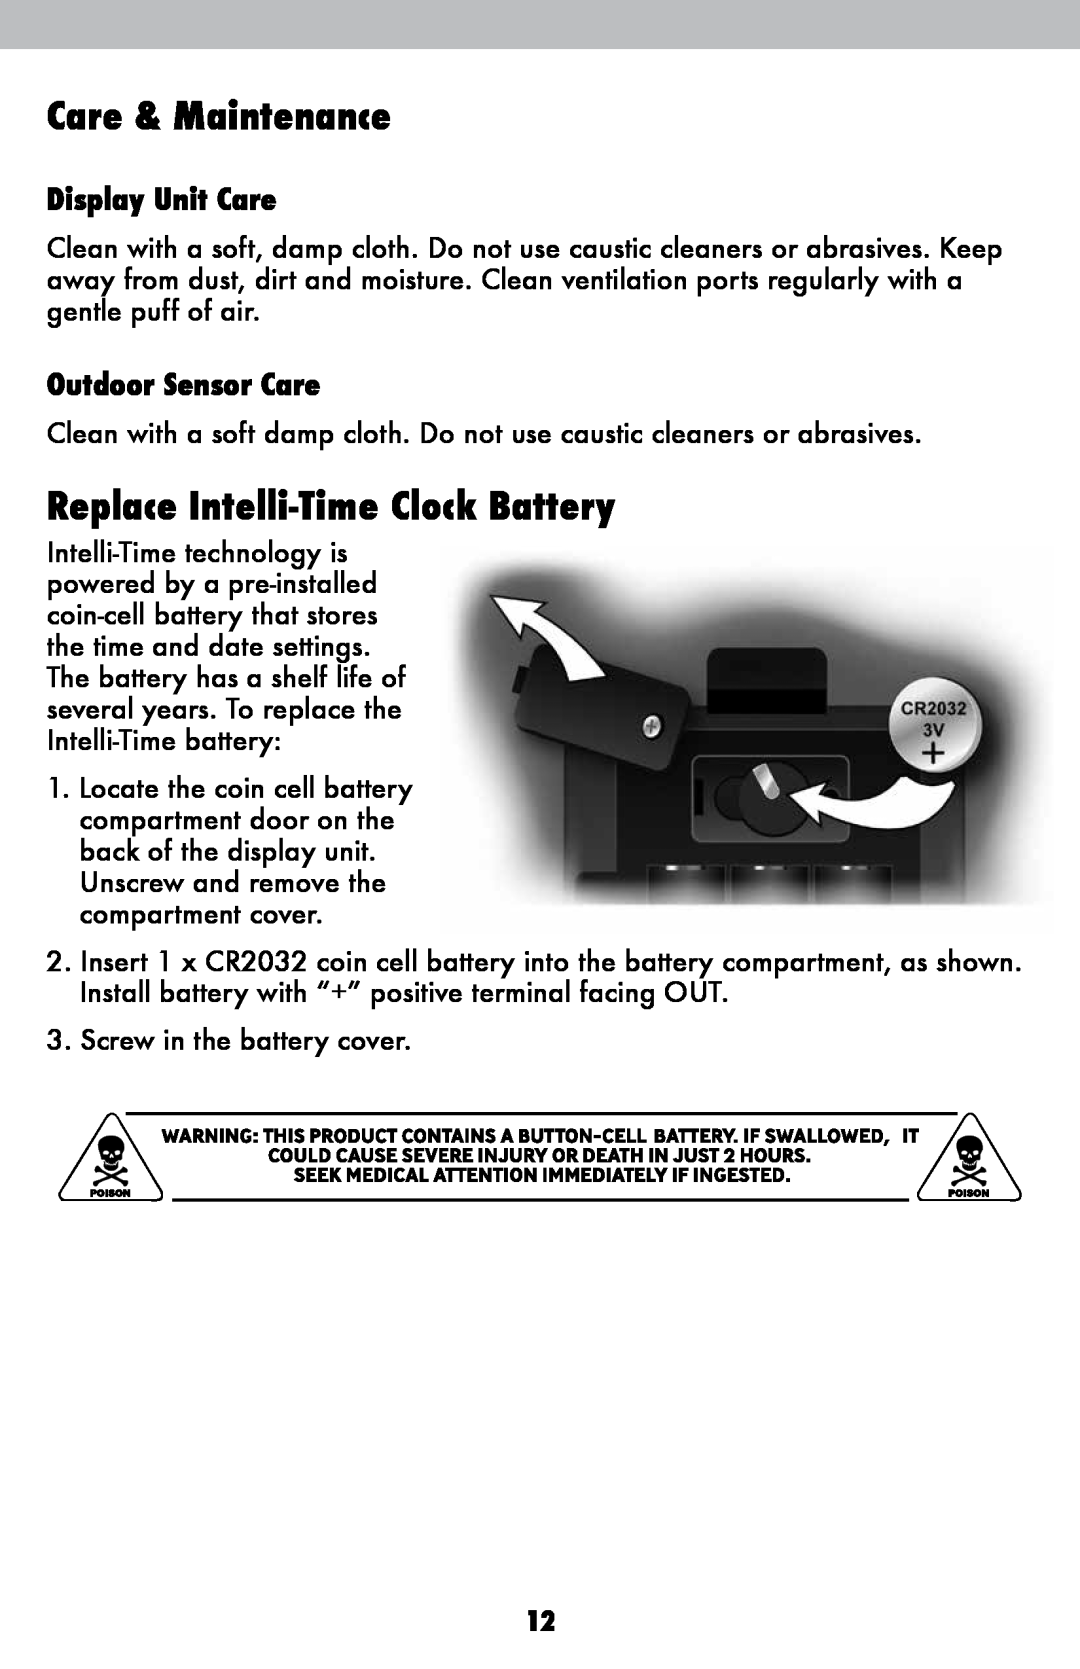 Acu-Rite 1086 Care & Maintenance, Replace Intelli-Time Clock Battery, Display Unit Care, Outdoor Sensor Care 